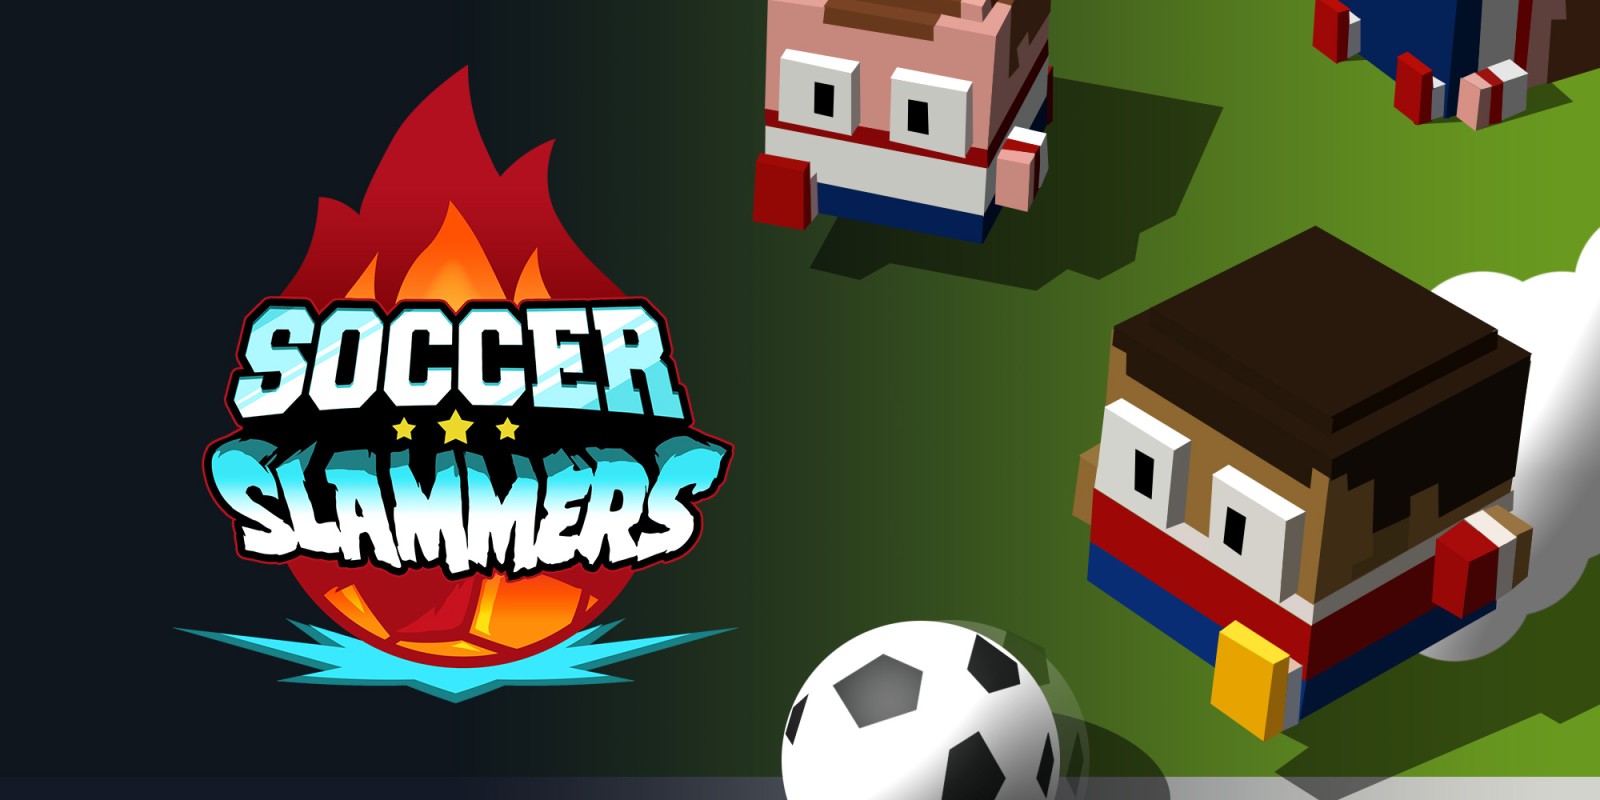 Soccer Slammers